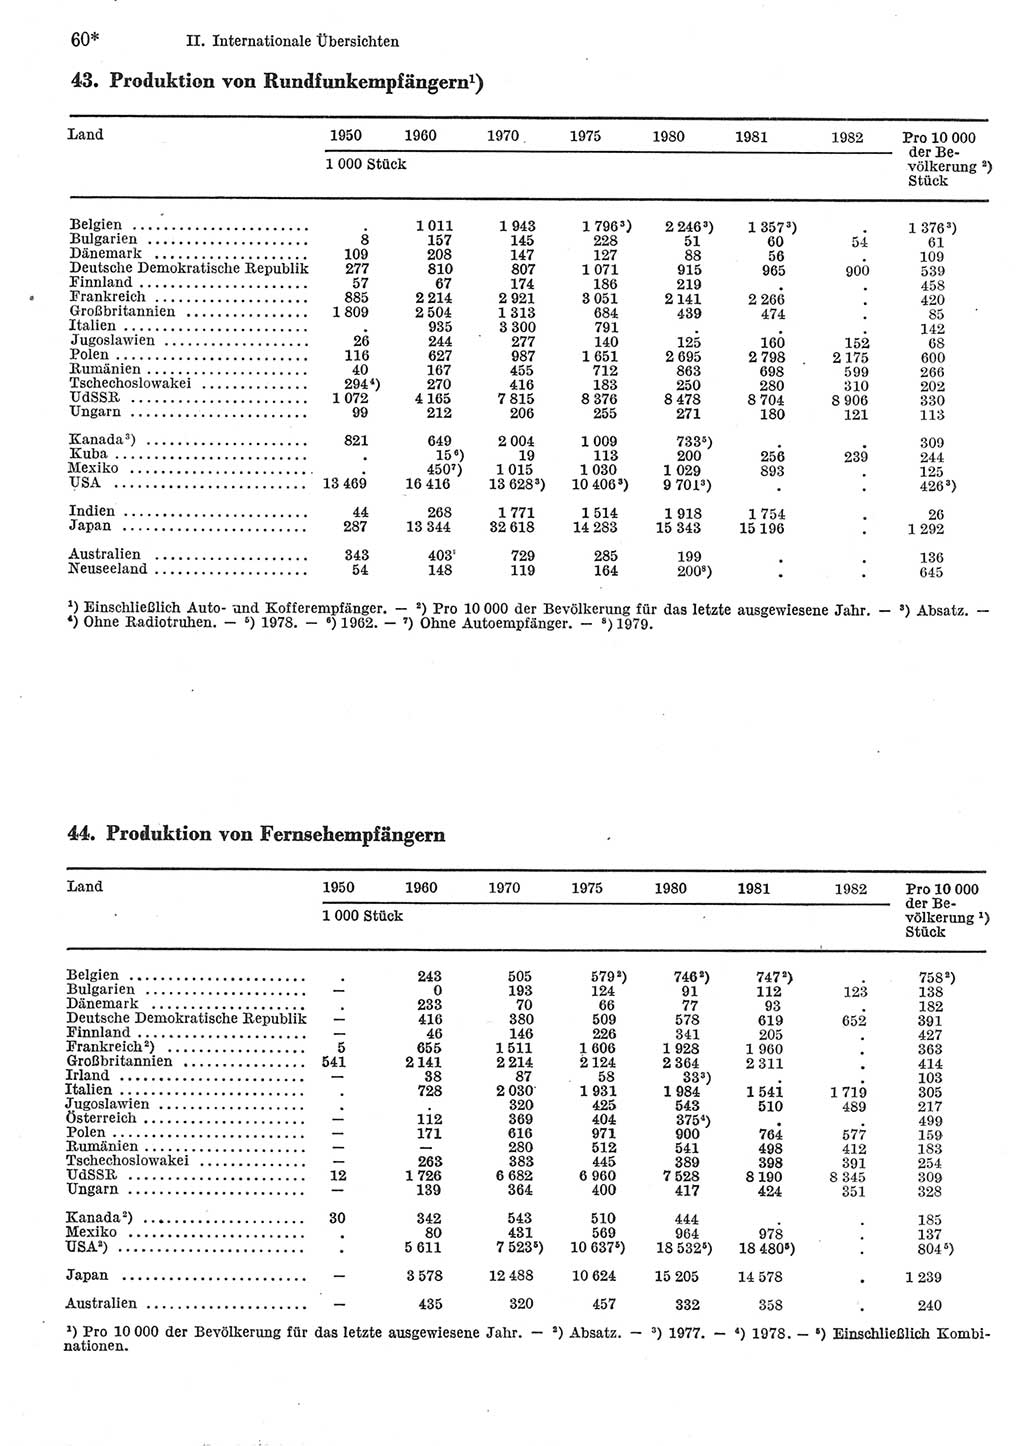 Statistisches Jahrbuch der Deutschen Demokratischen Republik (DDR) 1984, Seite 60 (Stat. Jb. DDR 1984, S. 60)